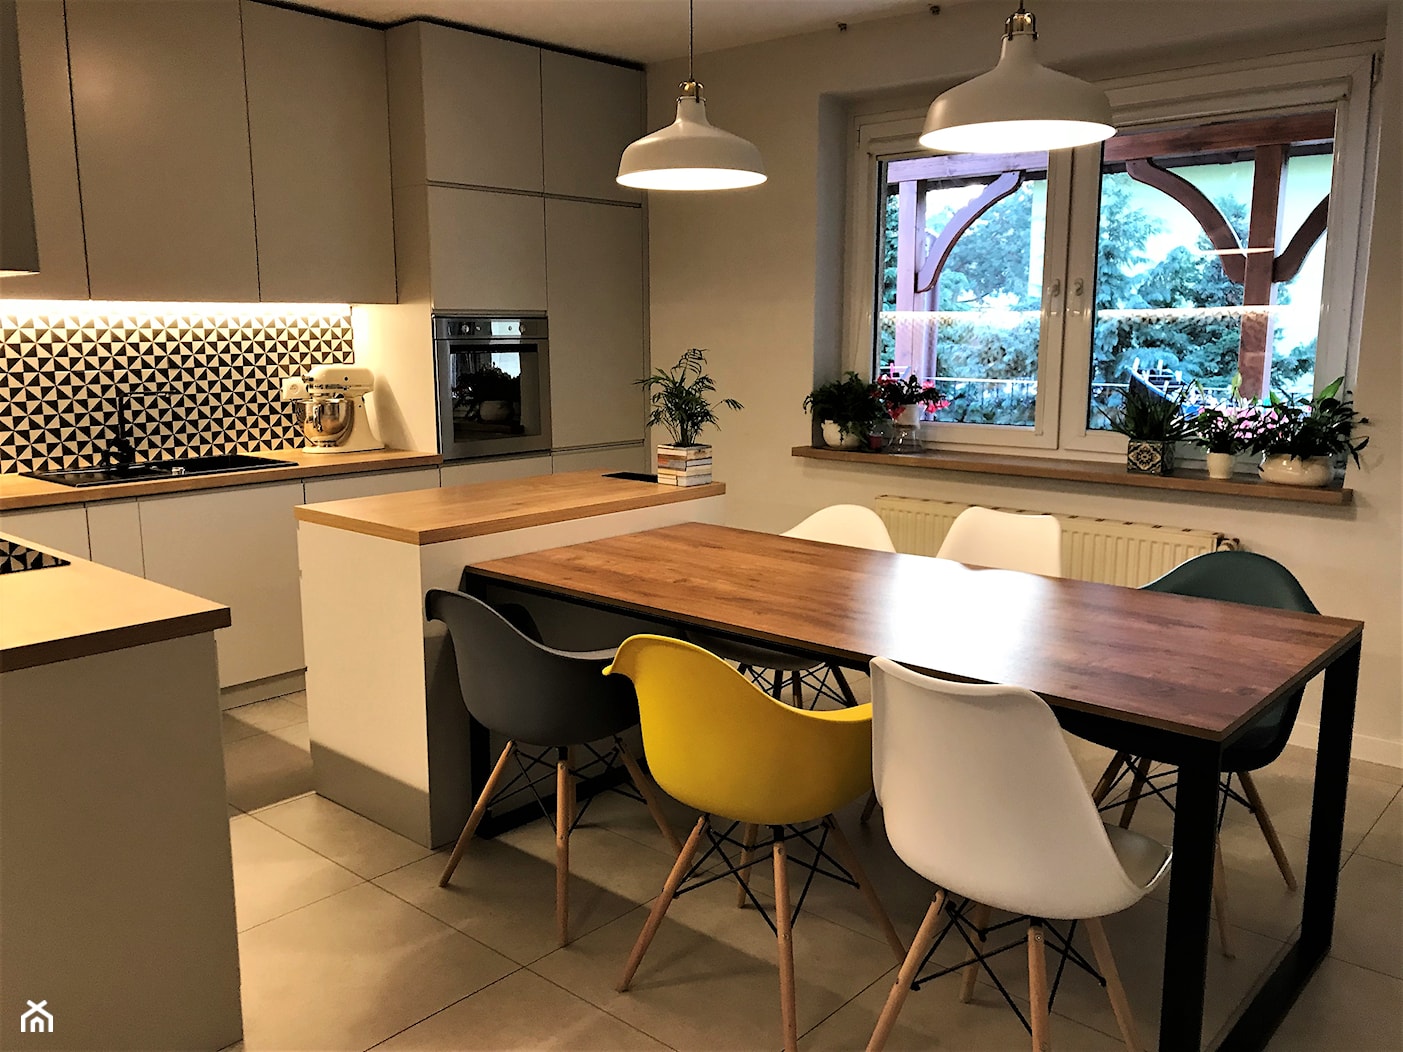 Kuchnia z roślinną tapetą i wielkim stołem - realizacja projektu - Średnia szara jadalnia w kuchni, styl nowoczesny - zdjęcie od DekoDeko - Homebook